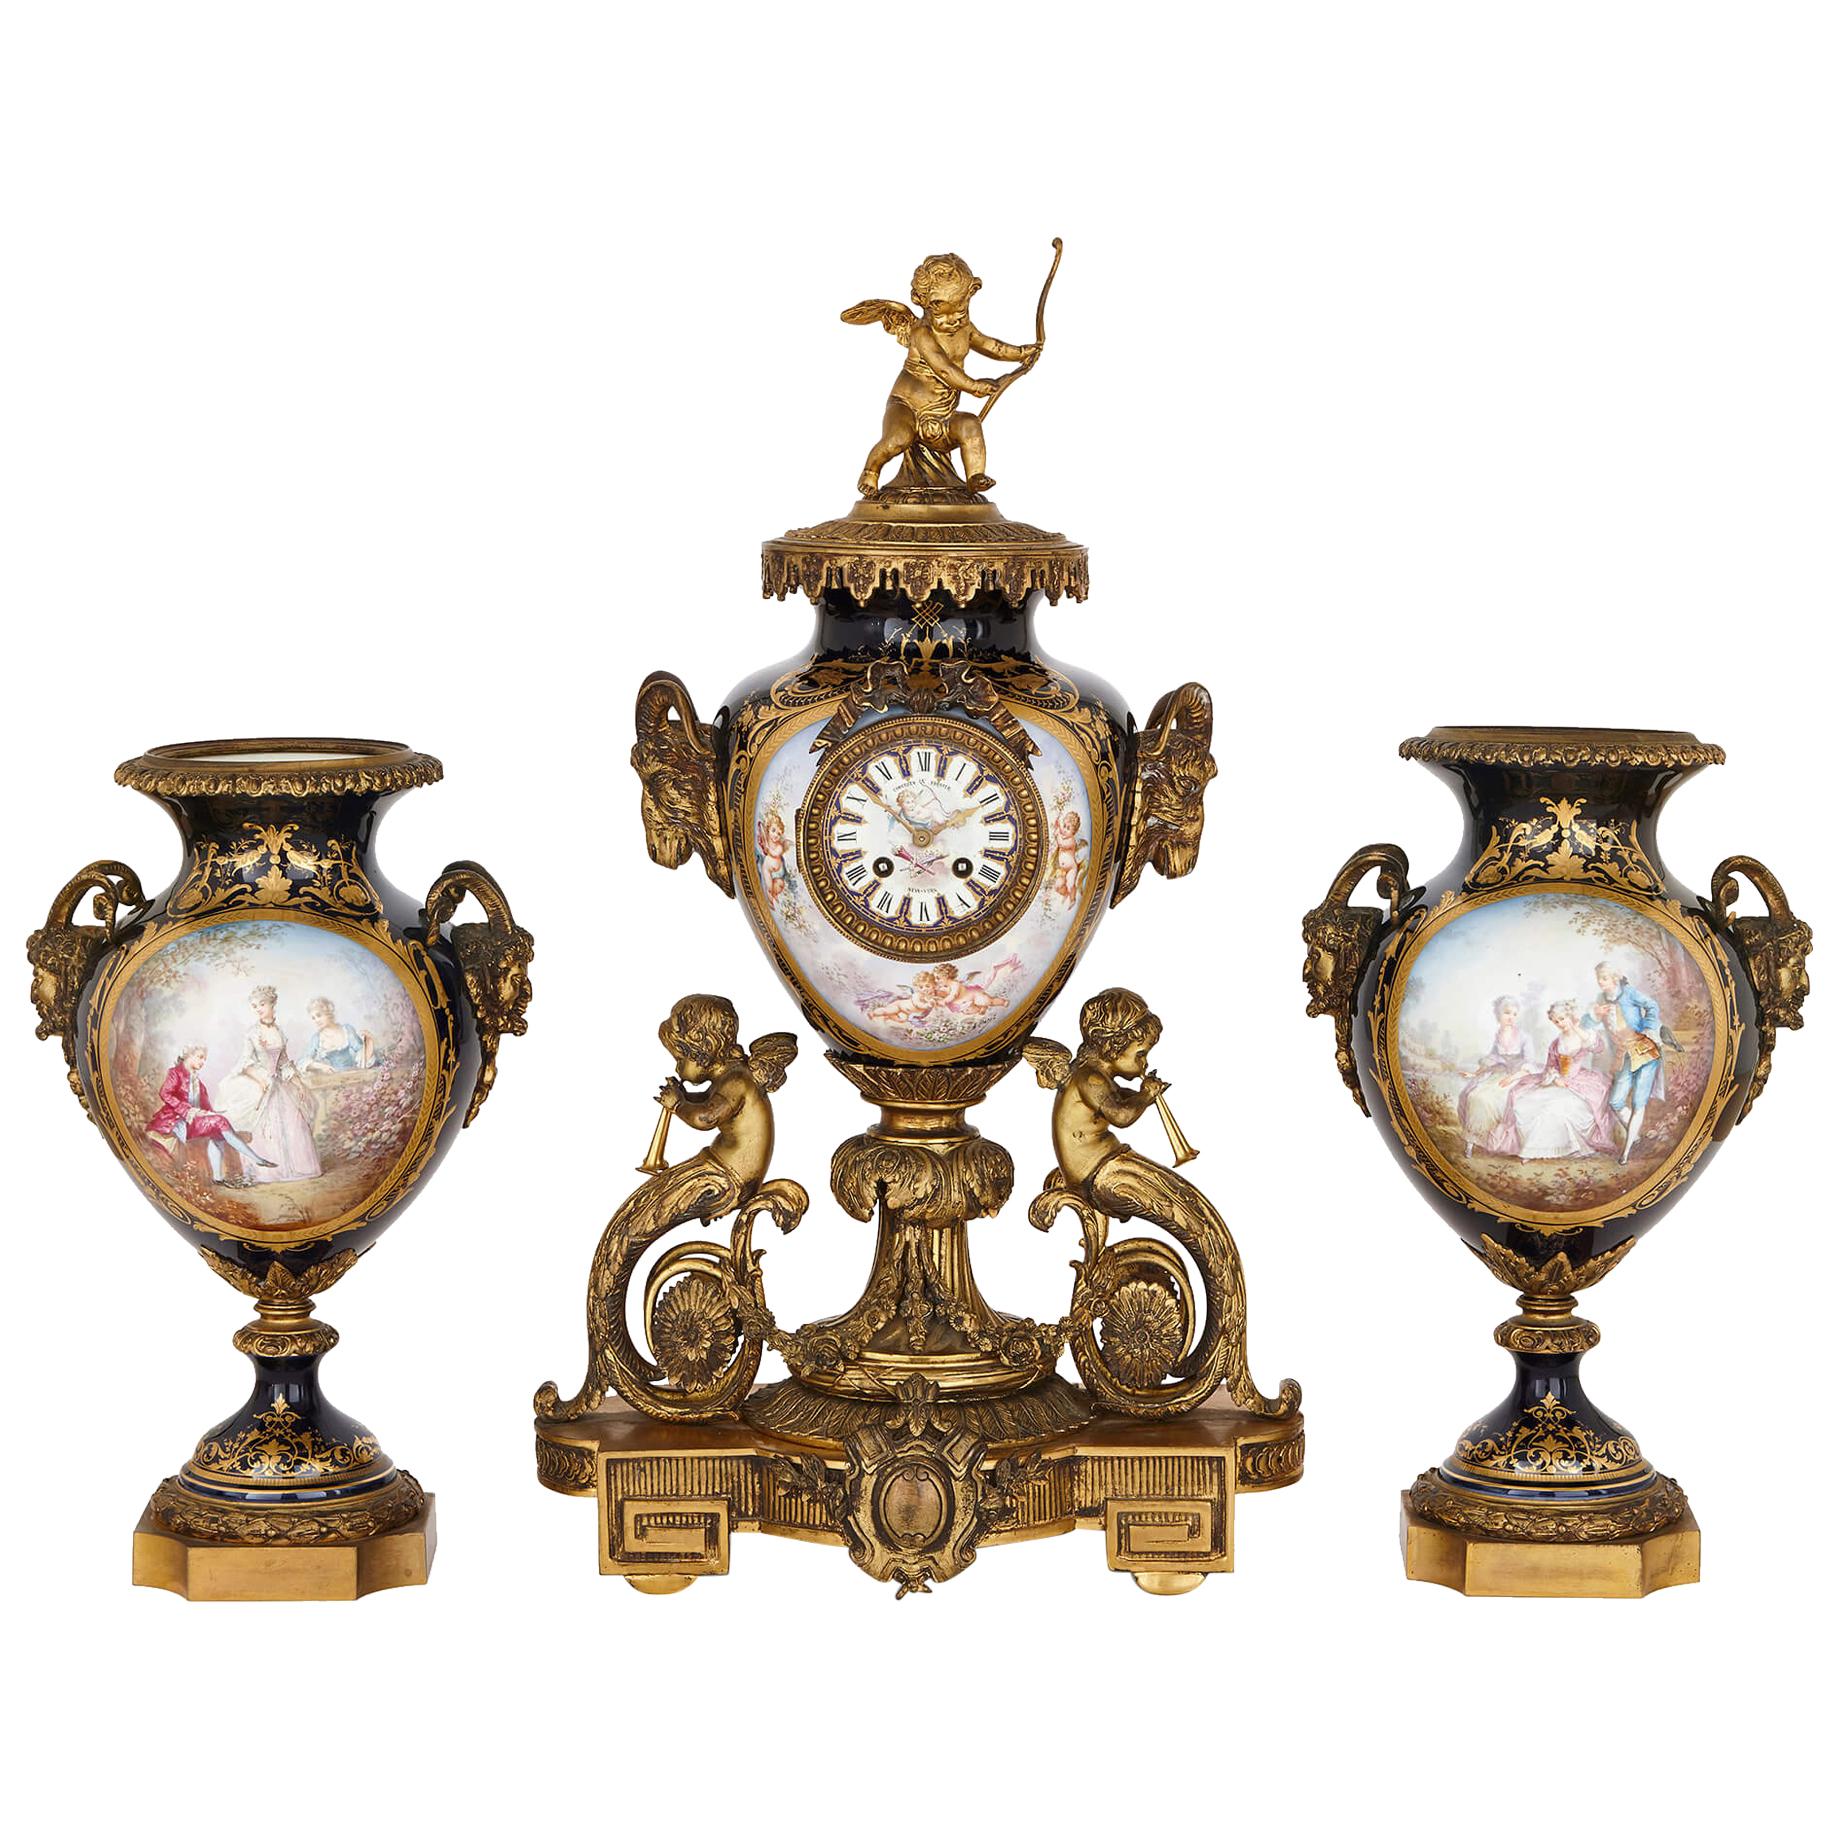 Uhrengarnituren im Rokoko-Stil aus vergoldeter Bronze und Porzellan im Sèvres-Stil